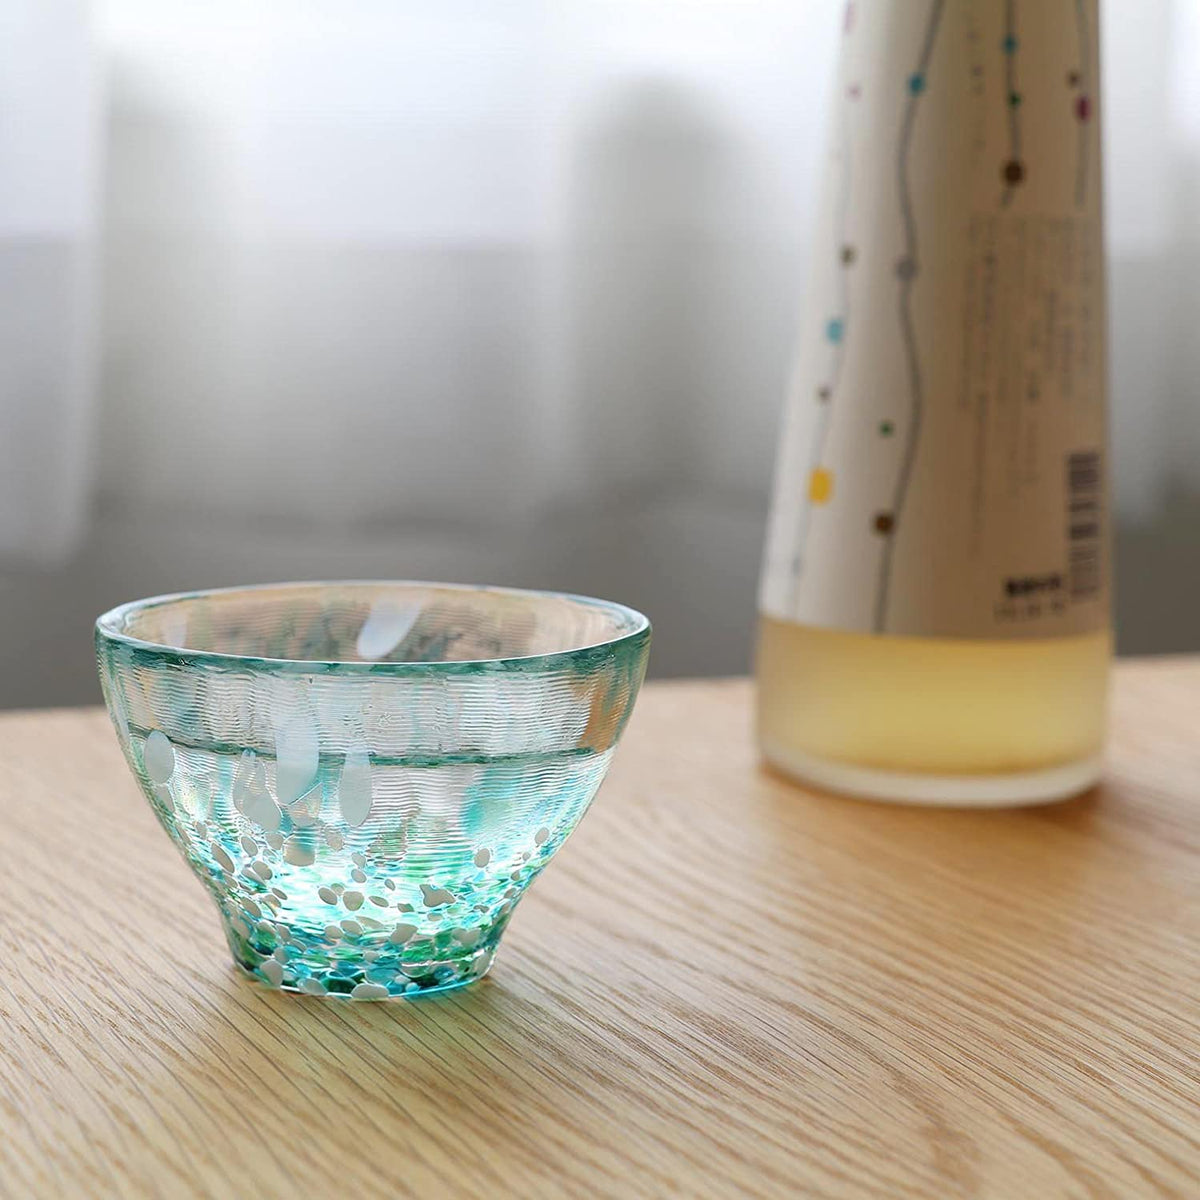 ADERIA Tsugaru Vidro Soda-Lime Glass Sake Cup